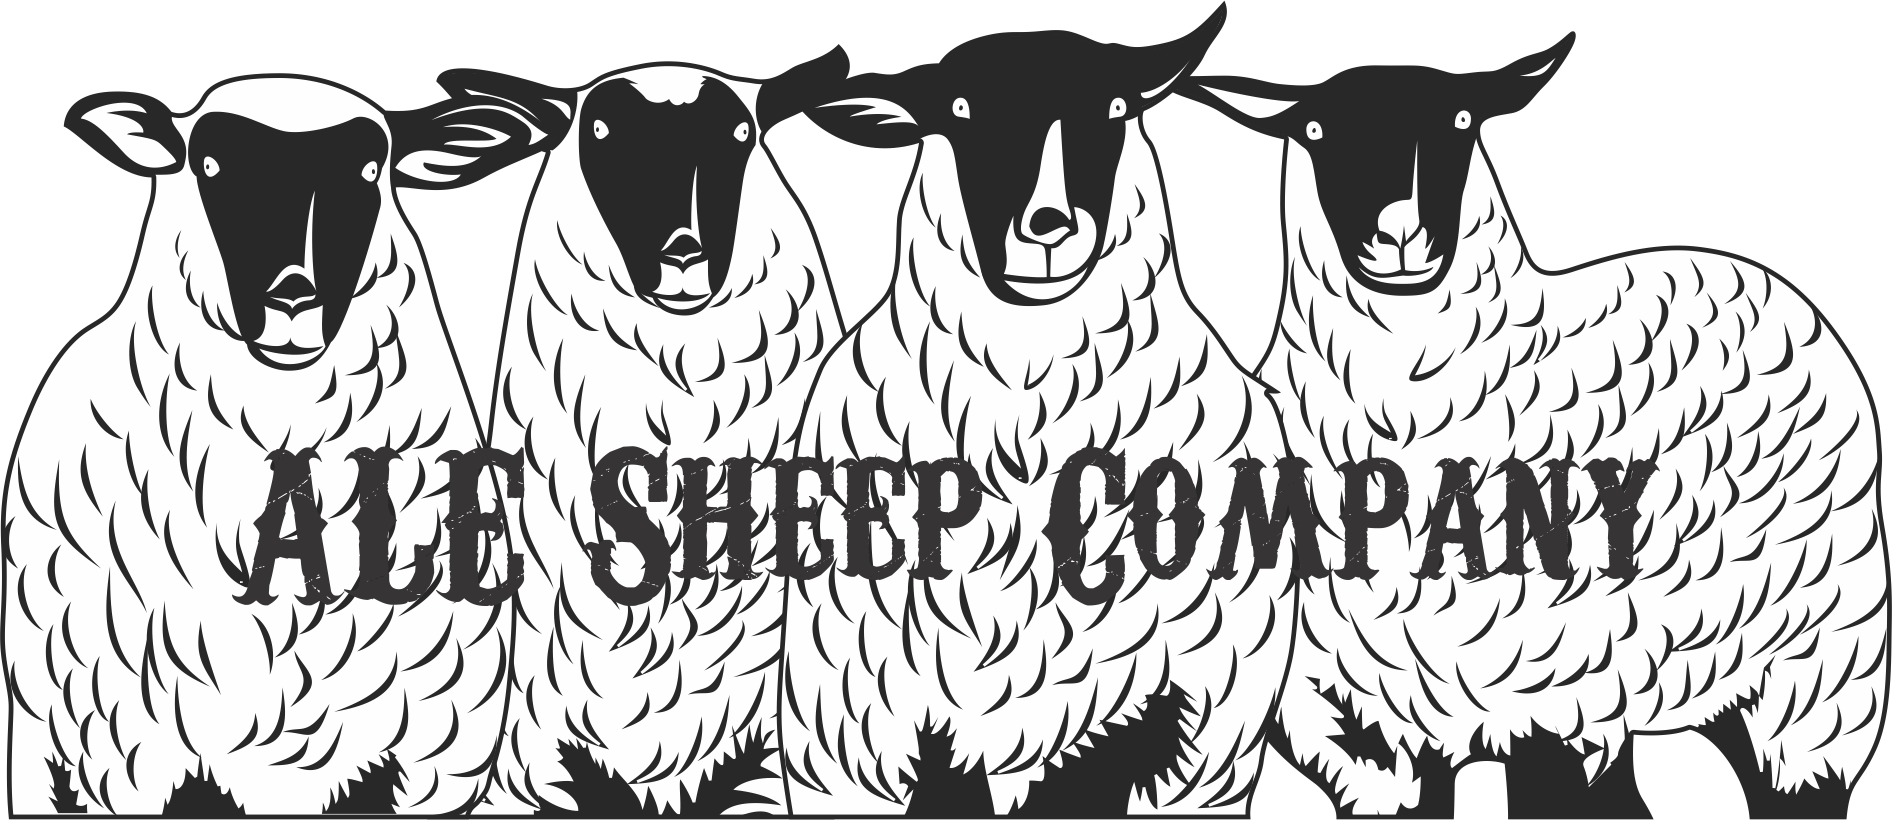 ALE Sheep Company